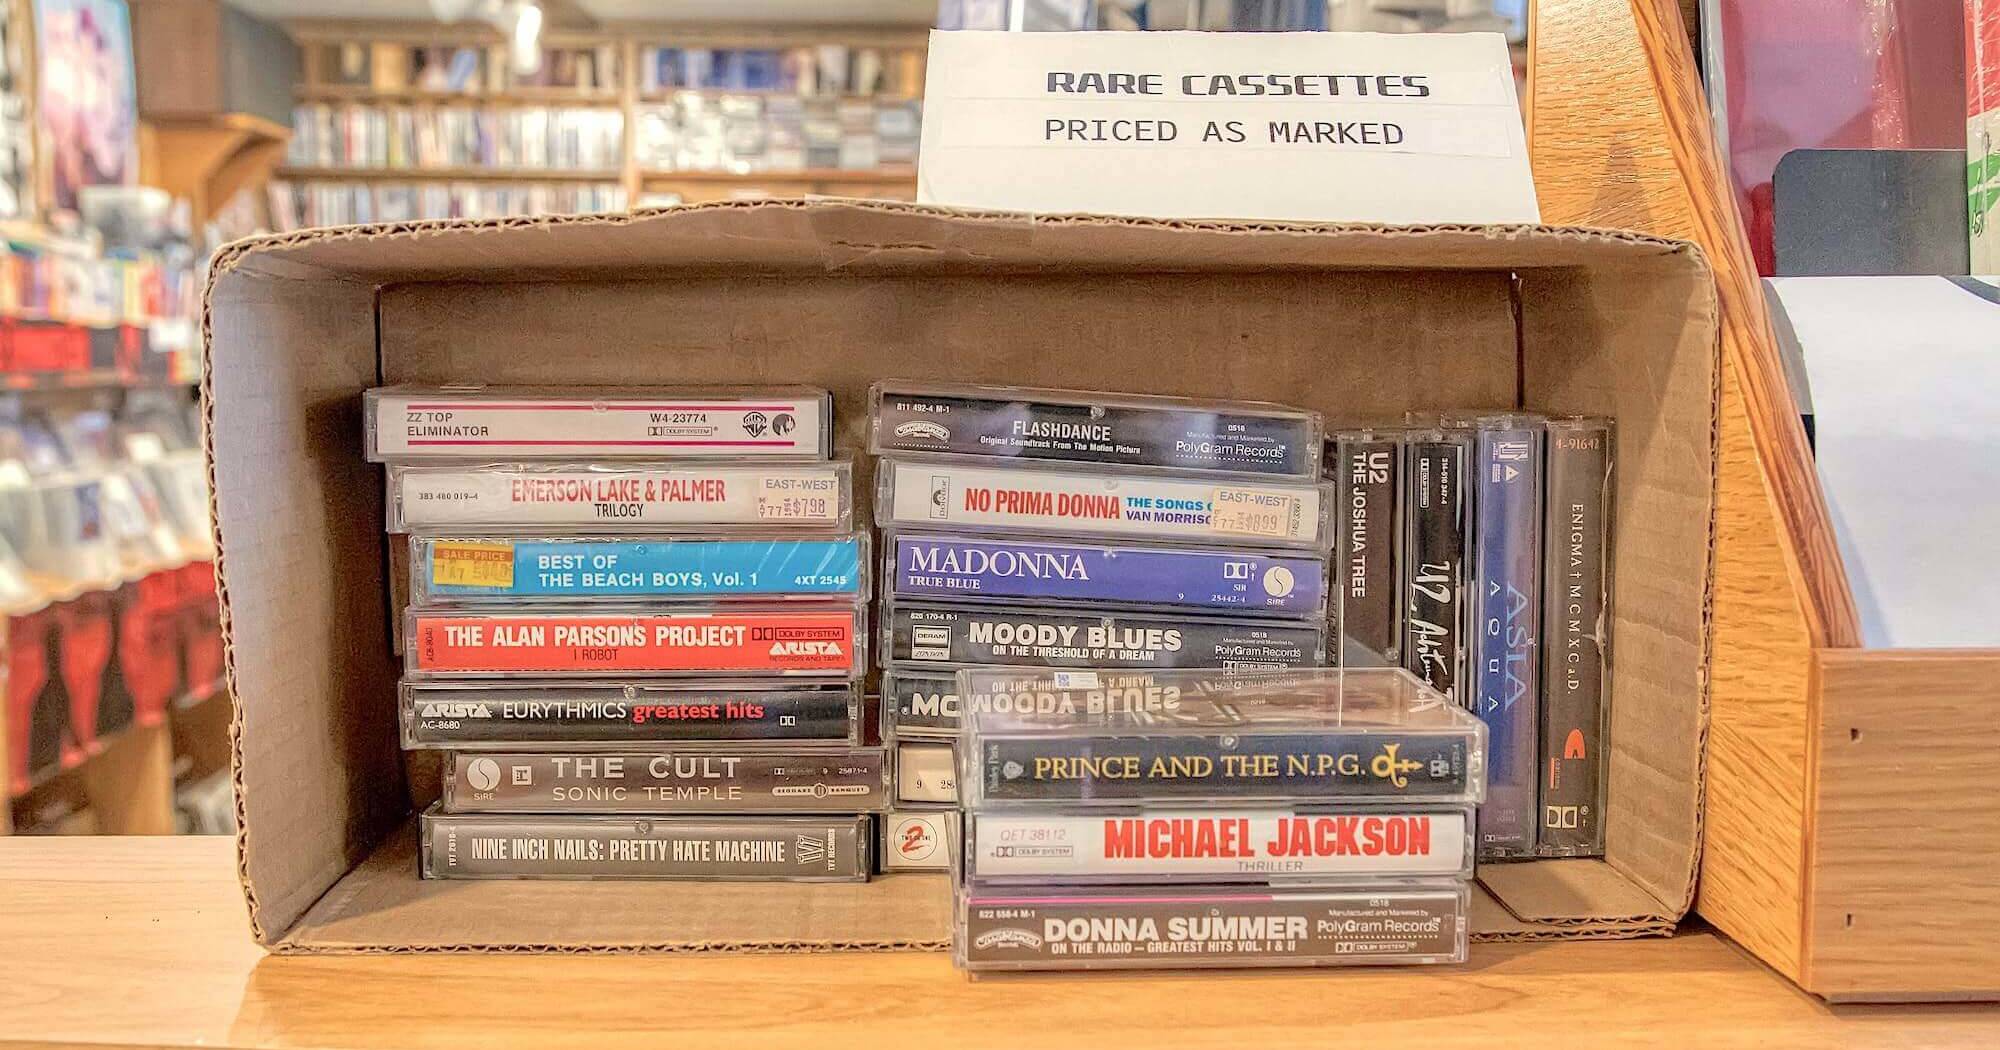 Аудиокассеты в ассортименте, лежащие на продажу в коробке на полке магазина